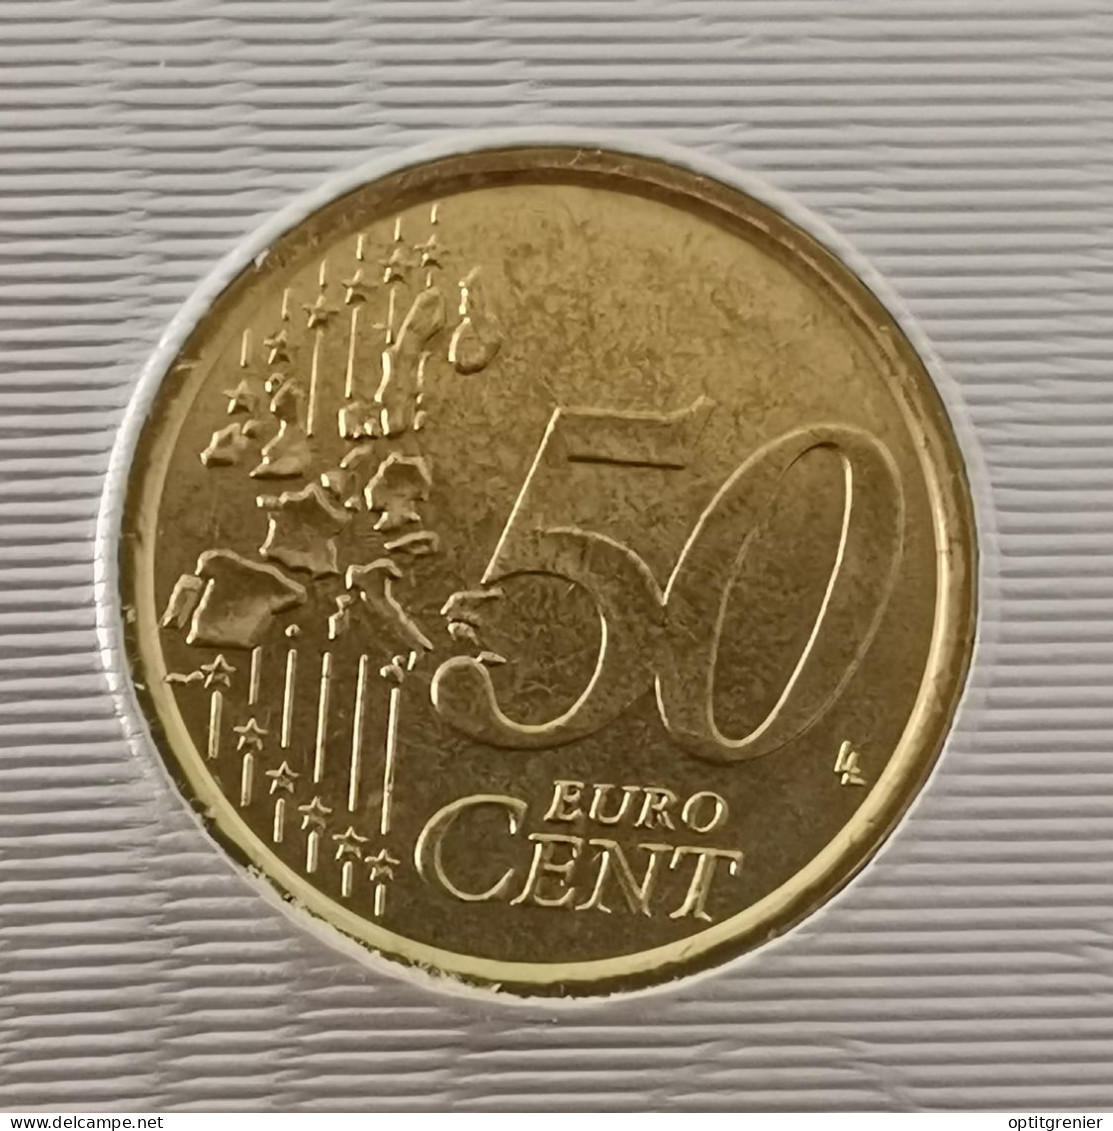 50 EURO CENT VATICAN 2006 / ISSUE DU COFFRET / VATICANO EURO CENTS (UN PEU "SALE") - Vaticaanstad